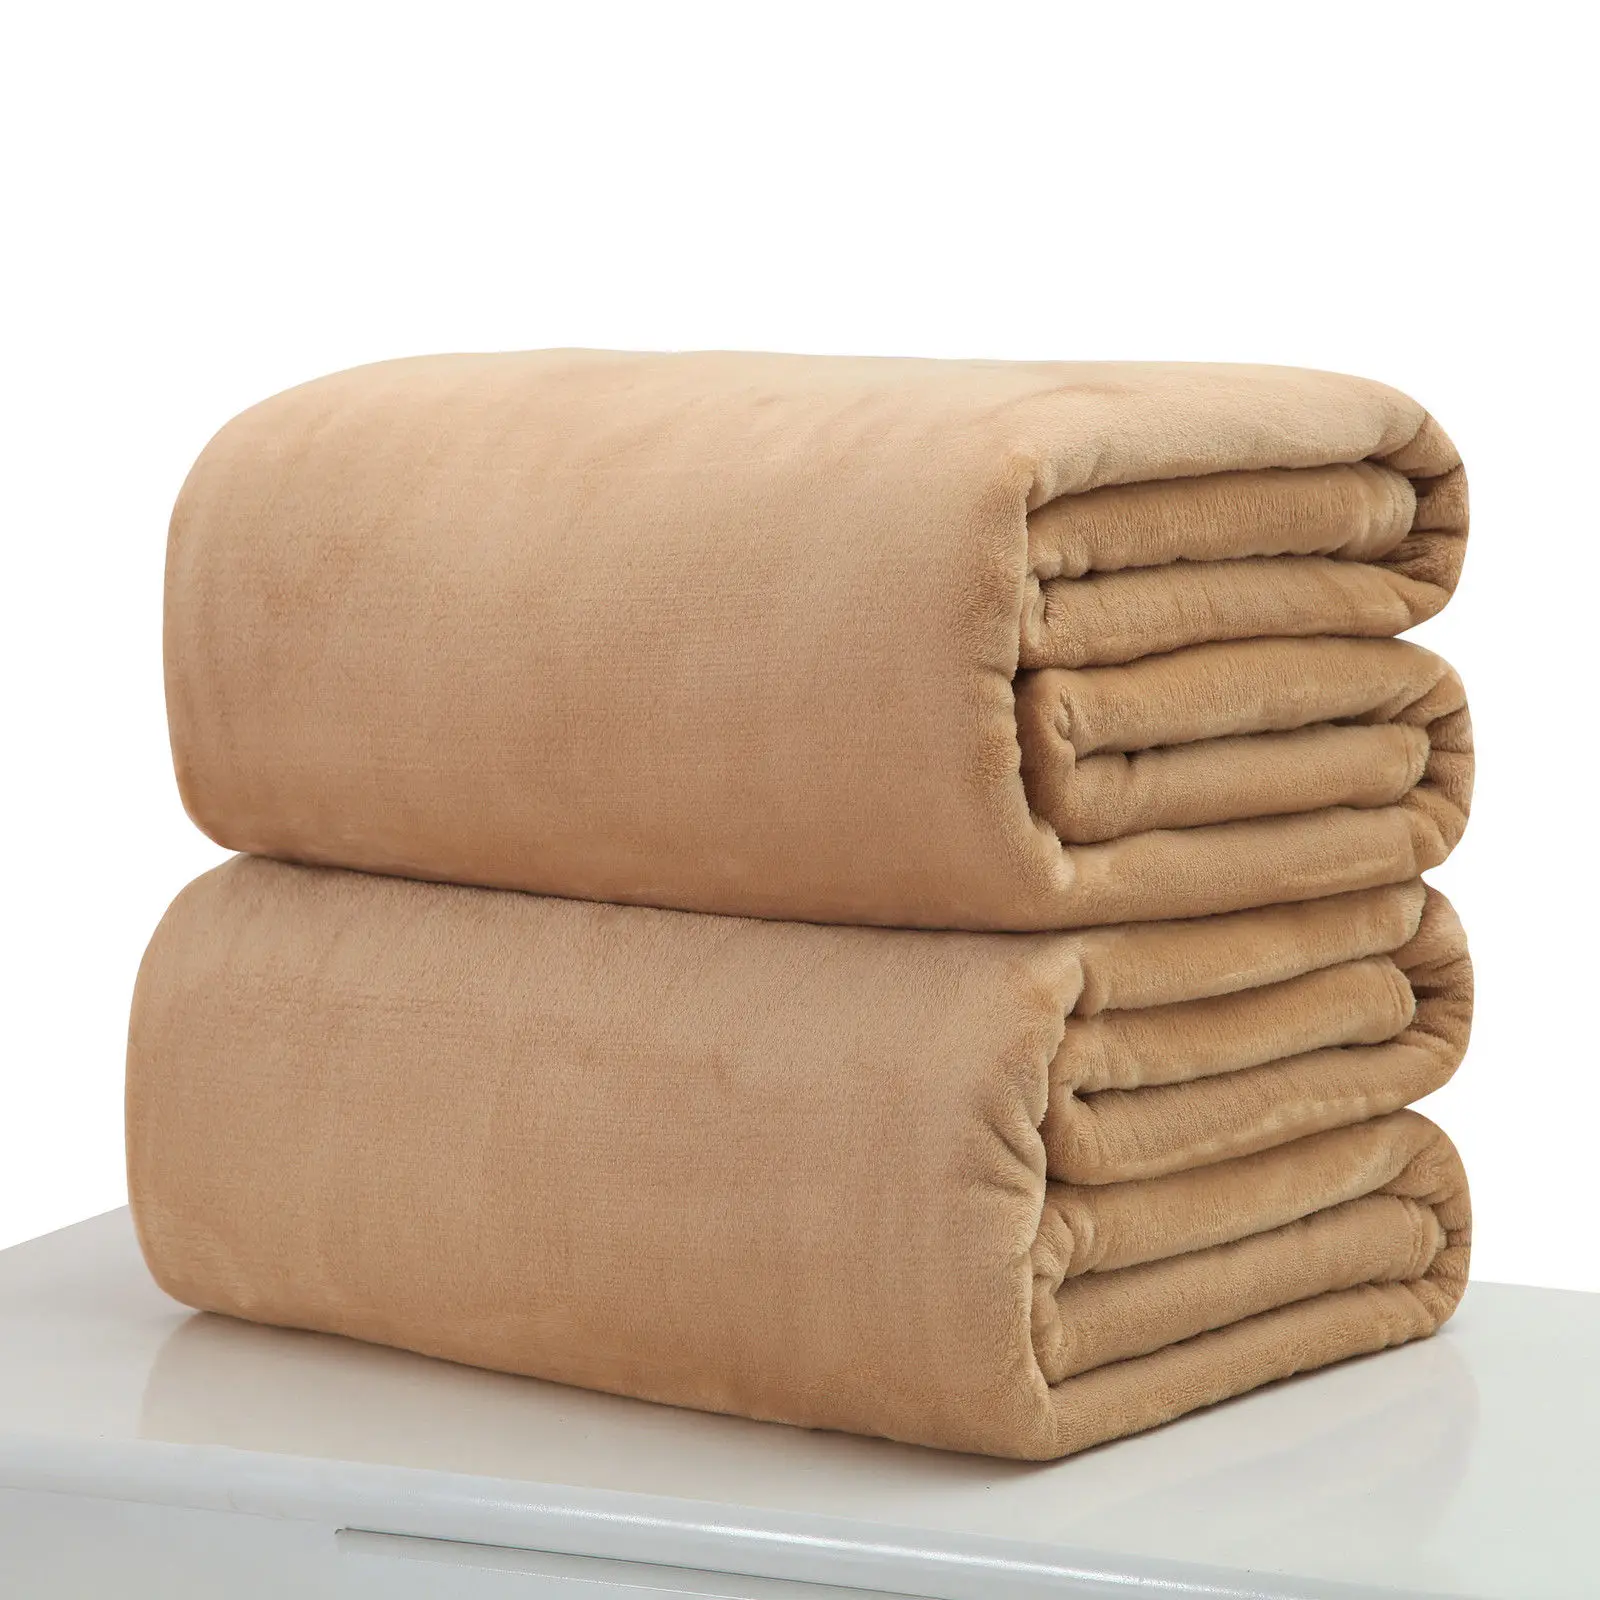 Faroot маленький супер теплый твердый микроплюшевый флисовое покрывало для одеяла ковер диван-кровать офисное домашнее детское одеяло - Цвет: Мягкая ткань